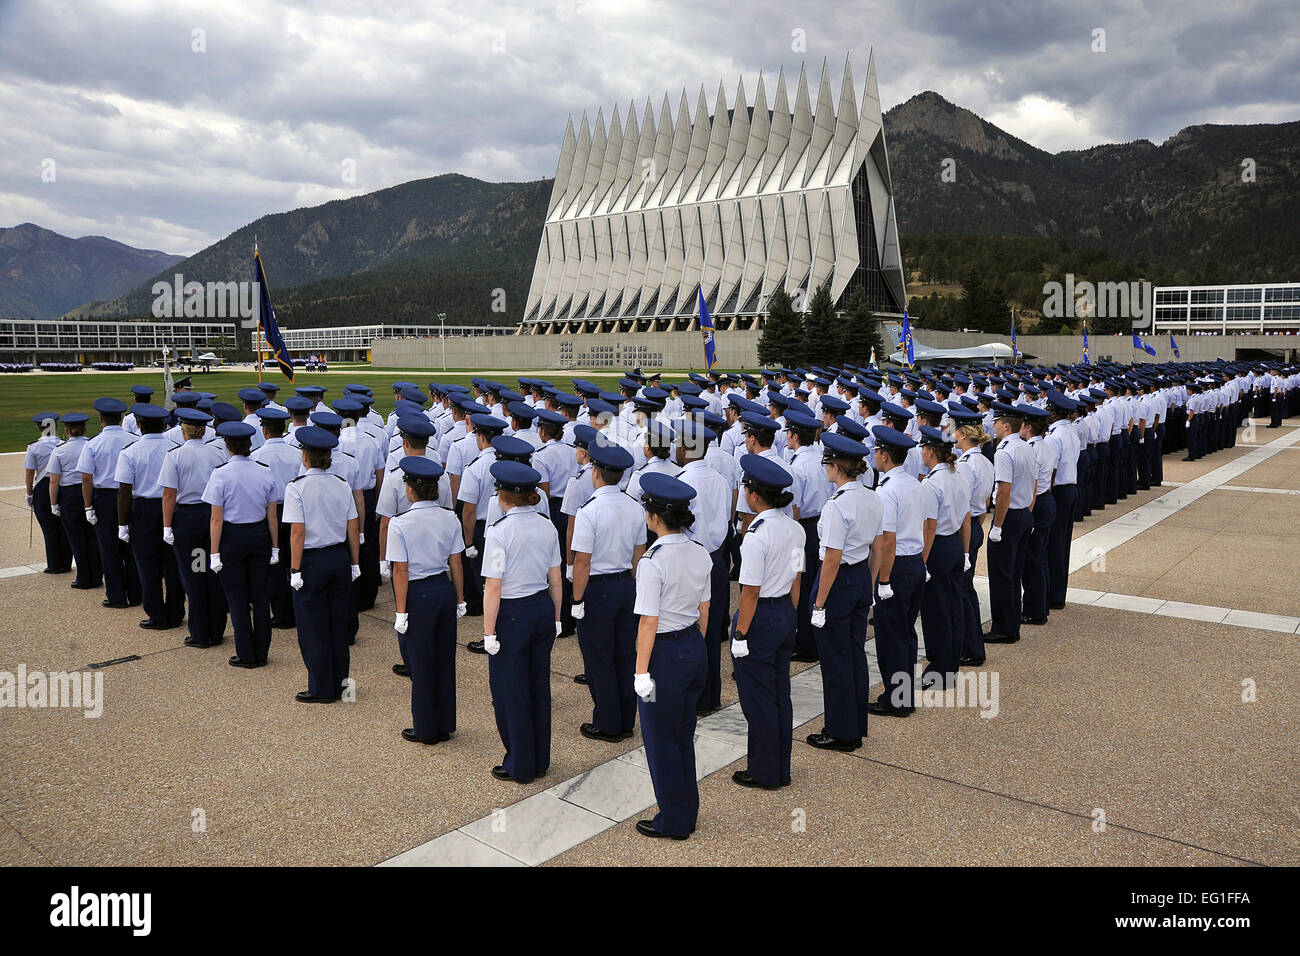 Los cadetes de la Academia de la Fuerza Aérea de los EE.UU líneas ala el terrazo durante la ceremonia de colocación de corona 11/9 y silencioso desfile en Colorado Springs, Colo., Septiembre 11, 2012. La Academia de la Fuerza Aérea de cortesía Foto de stock